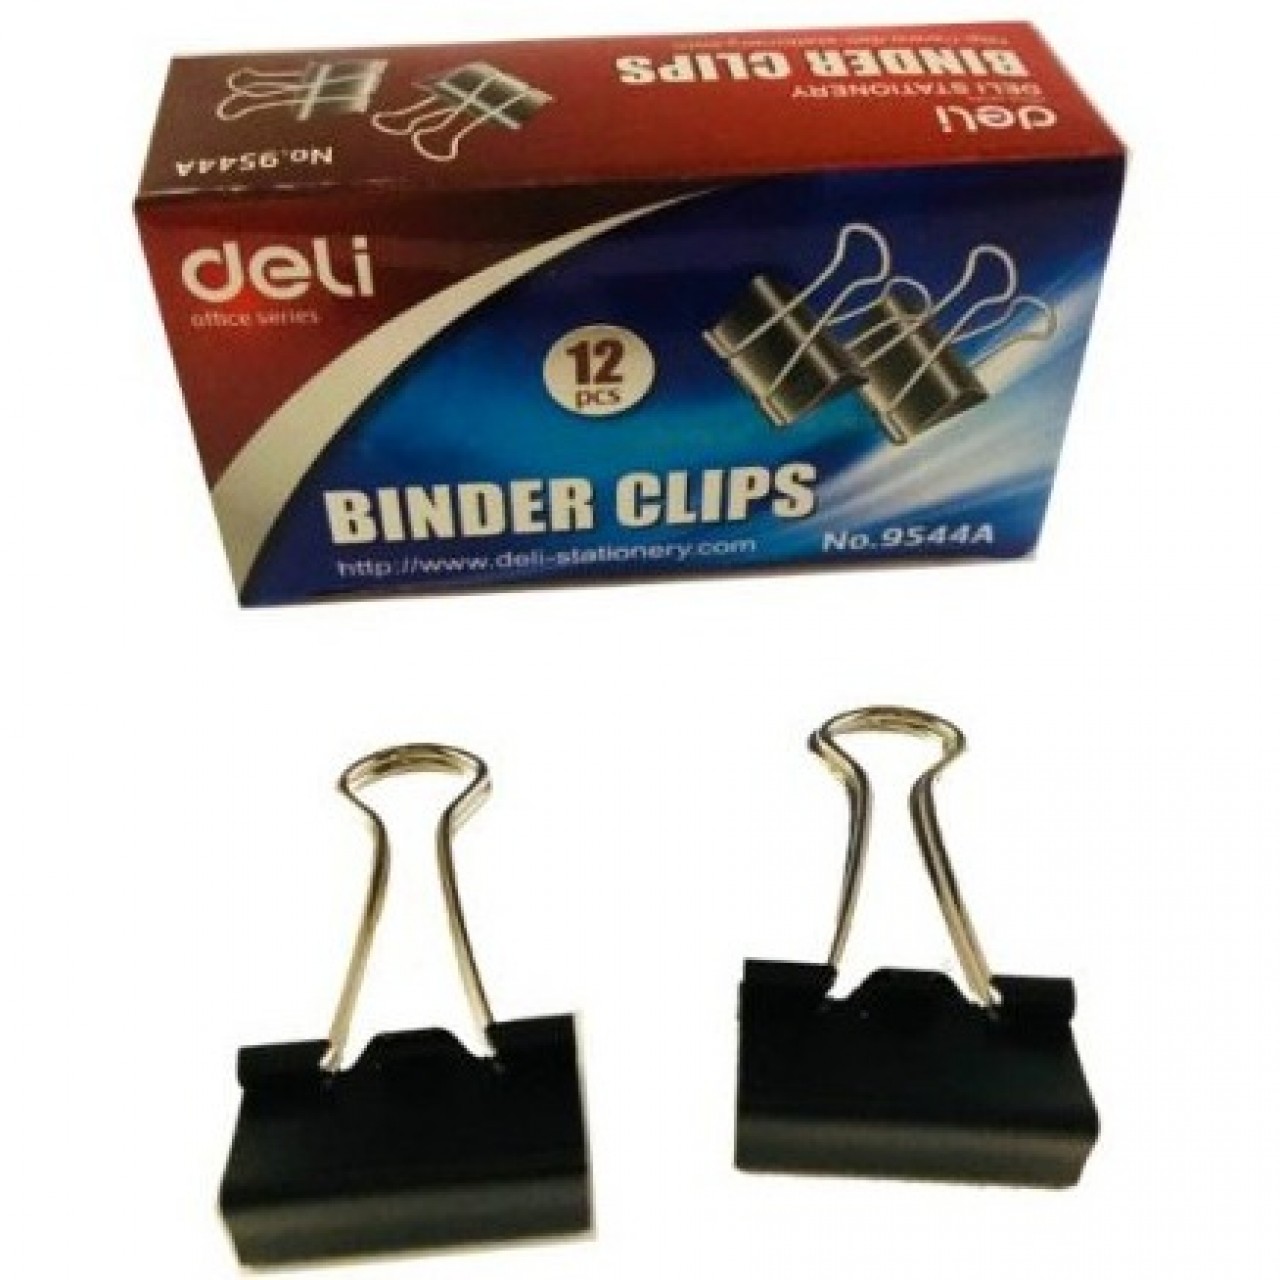 Deli Metal Binder Clips 9544A - 25mm Black - 12Pcs/Box